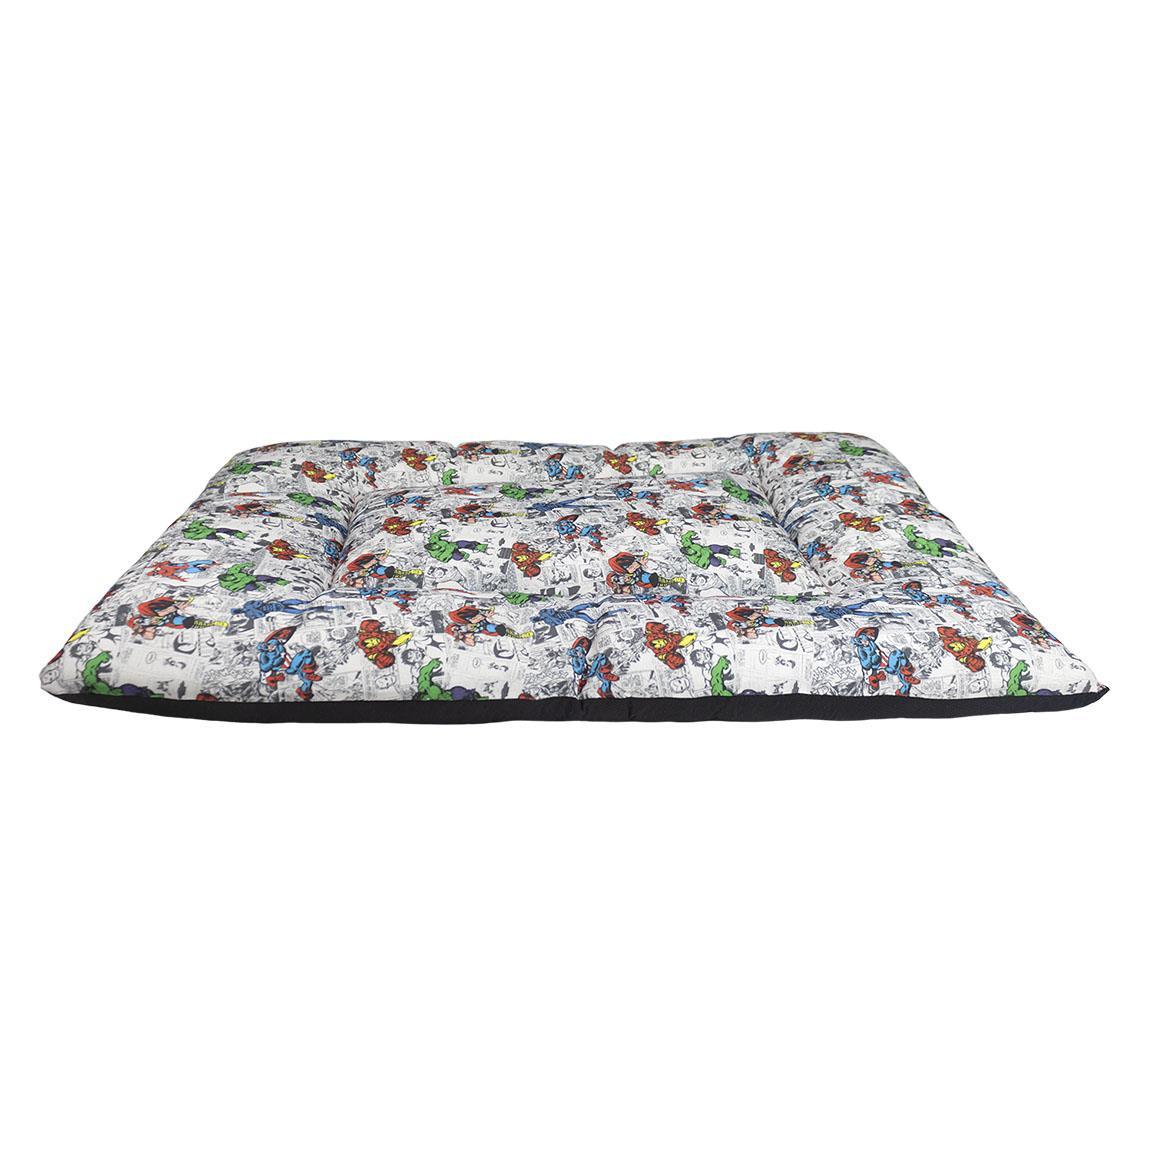 Cuscino materasso per cani - MARVEL - Magic Dreams Store